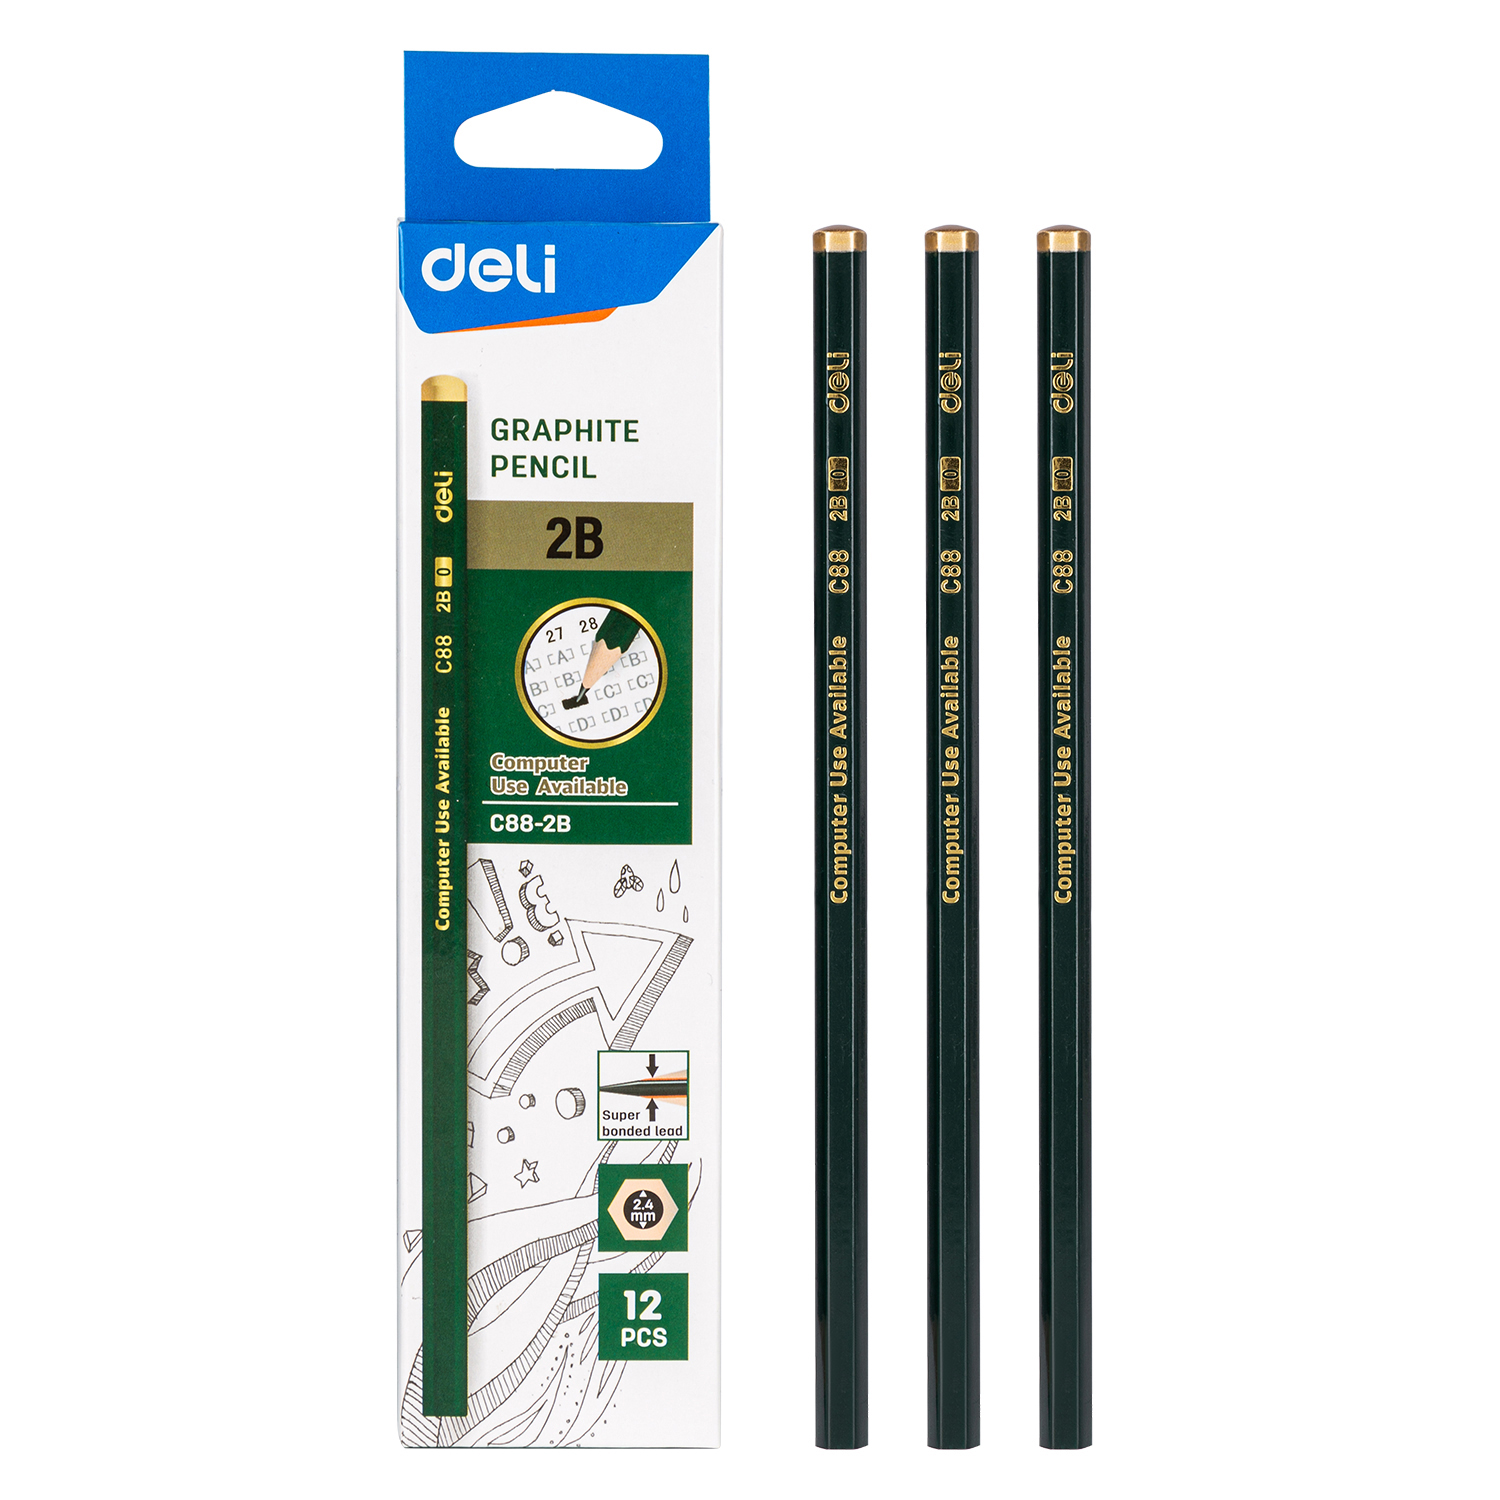 Deli-EC88-2B Graphite Pencil